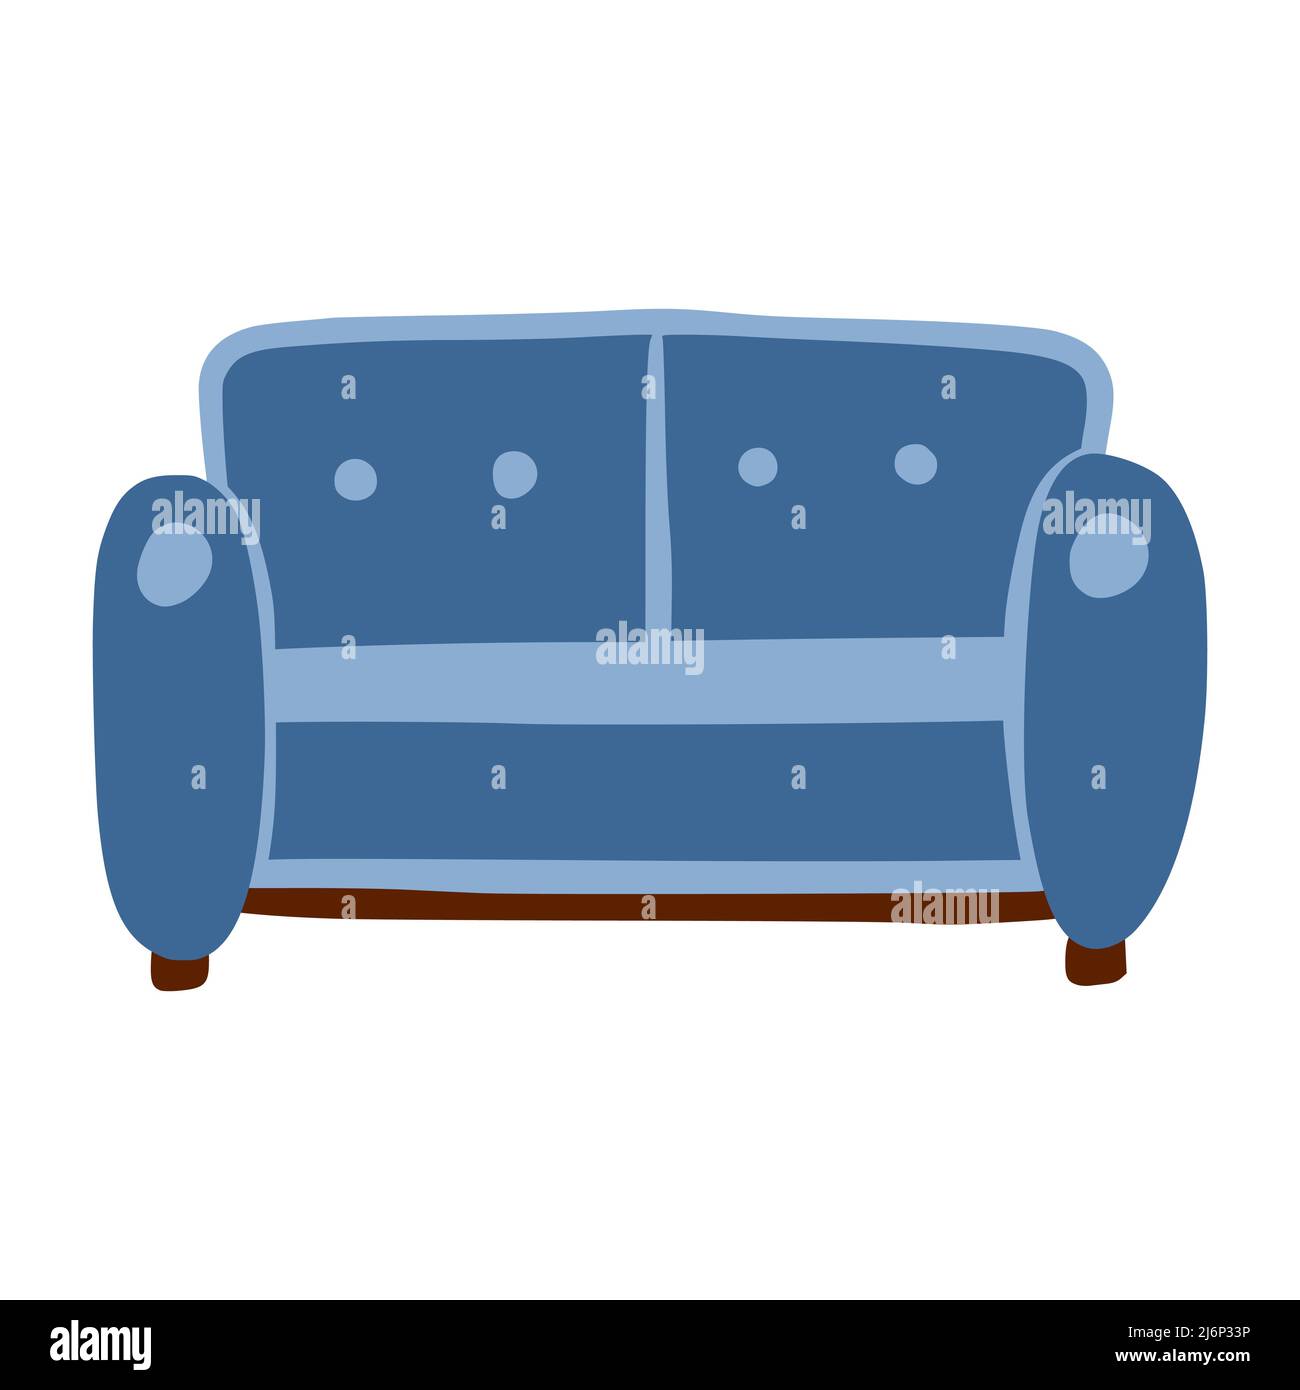 Sofa für zwei Personen. Ein Möbelstück für Zuhause und Komfort. Eine einfache, niedliche handgezeichnete Zeichnung. Hygge, ein gemütliches Zuhause, Komfort-Umgebung. Isoliert auf Weiß Stock Vektor